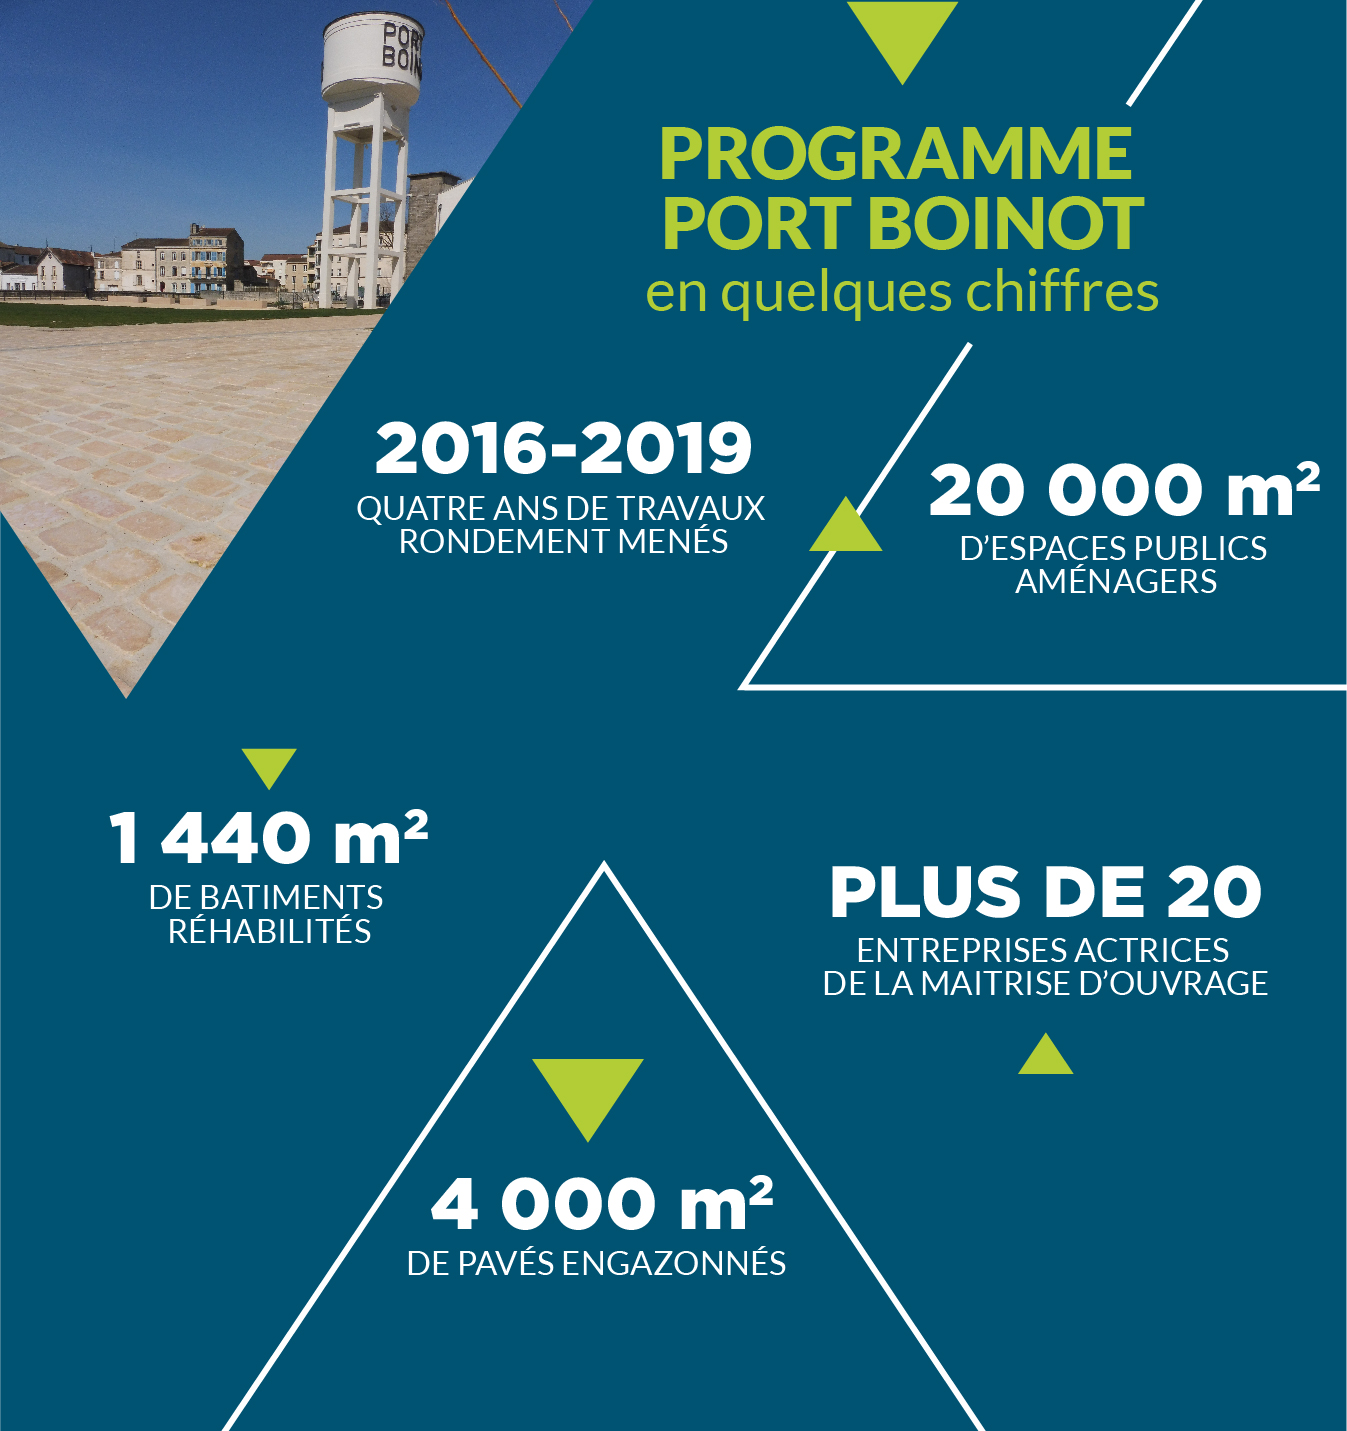 programme du chantier Port Boinot en quelques chiffres